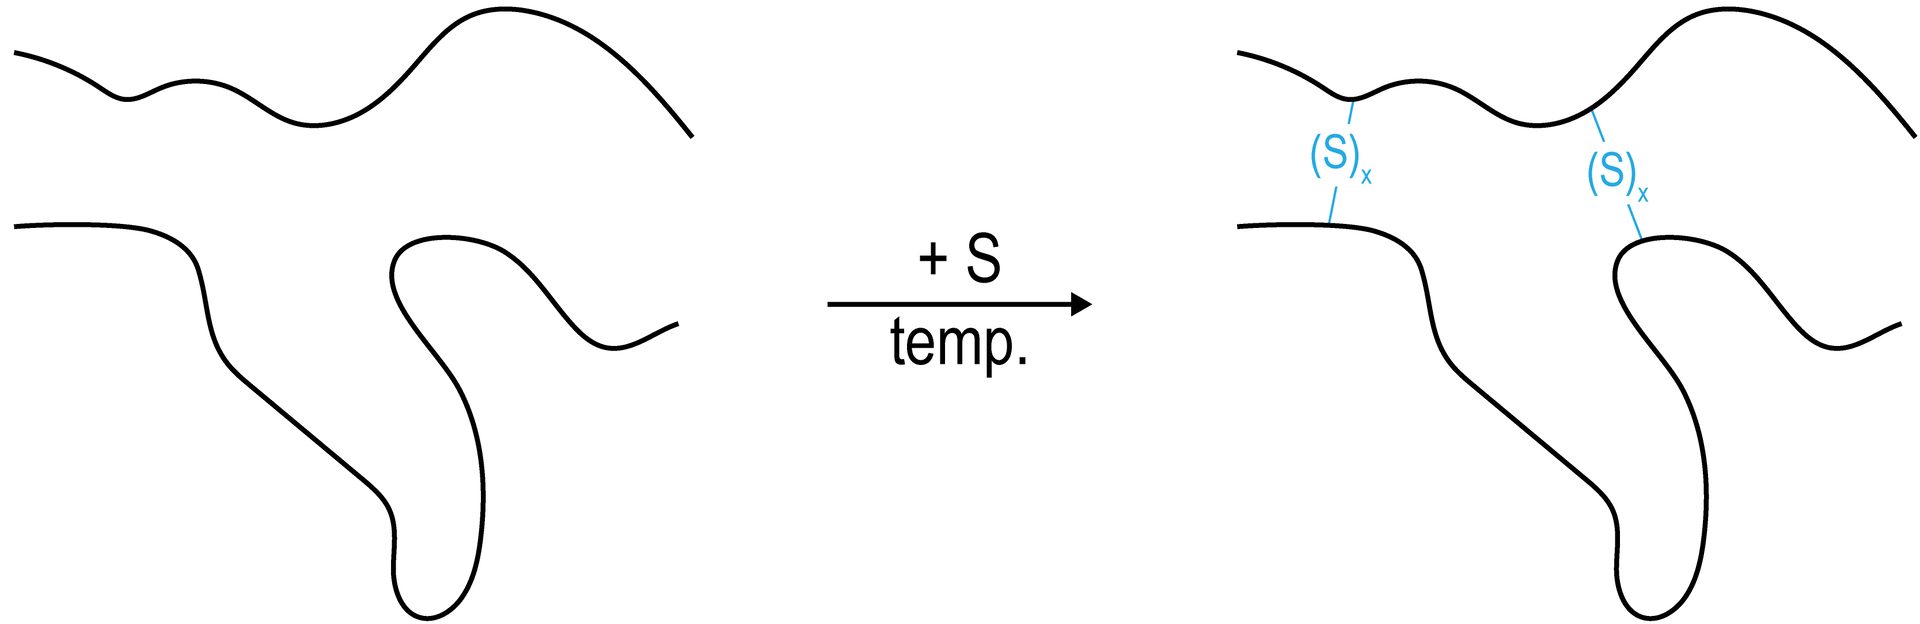 Ilustracja przedstawiająca dwie cienkie falujące linie jedna nad drugą, symbolizują one łańcuchy węglowodorowe. Pod pływem siarki i temperatury pomiędzy linami - łańcuchami powstają mostki disiarczkowe (S) indeks dolny iks koniec indeksu.  